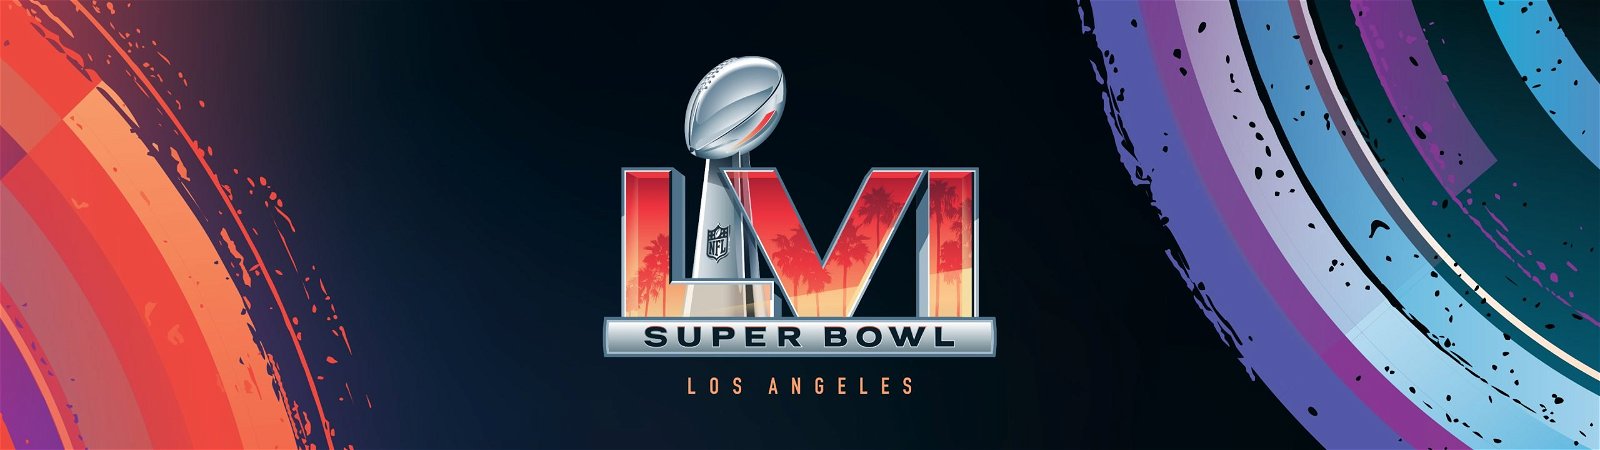 Super Bowl TV